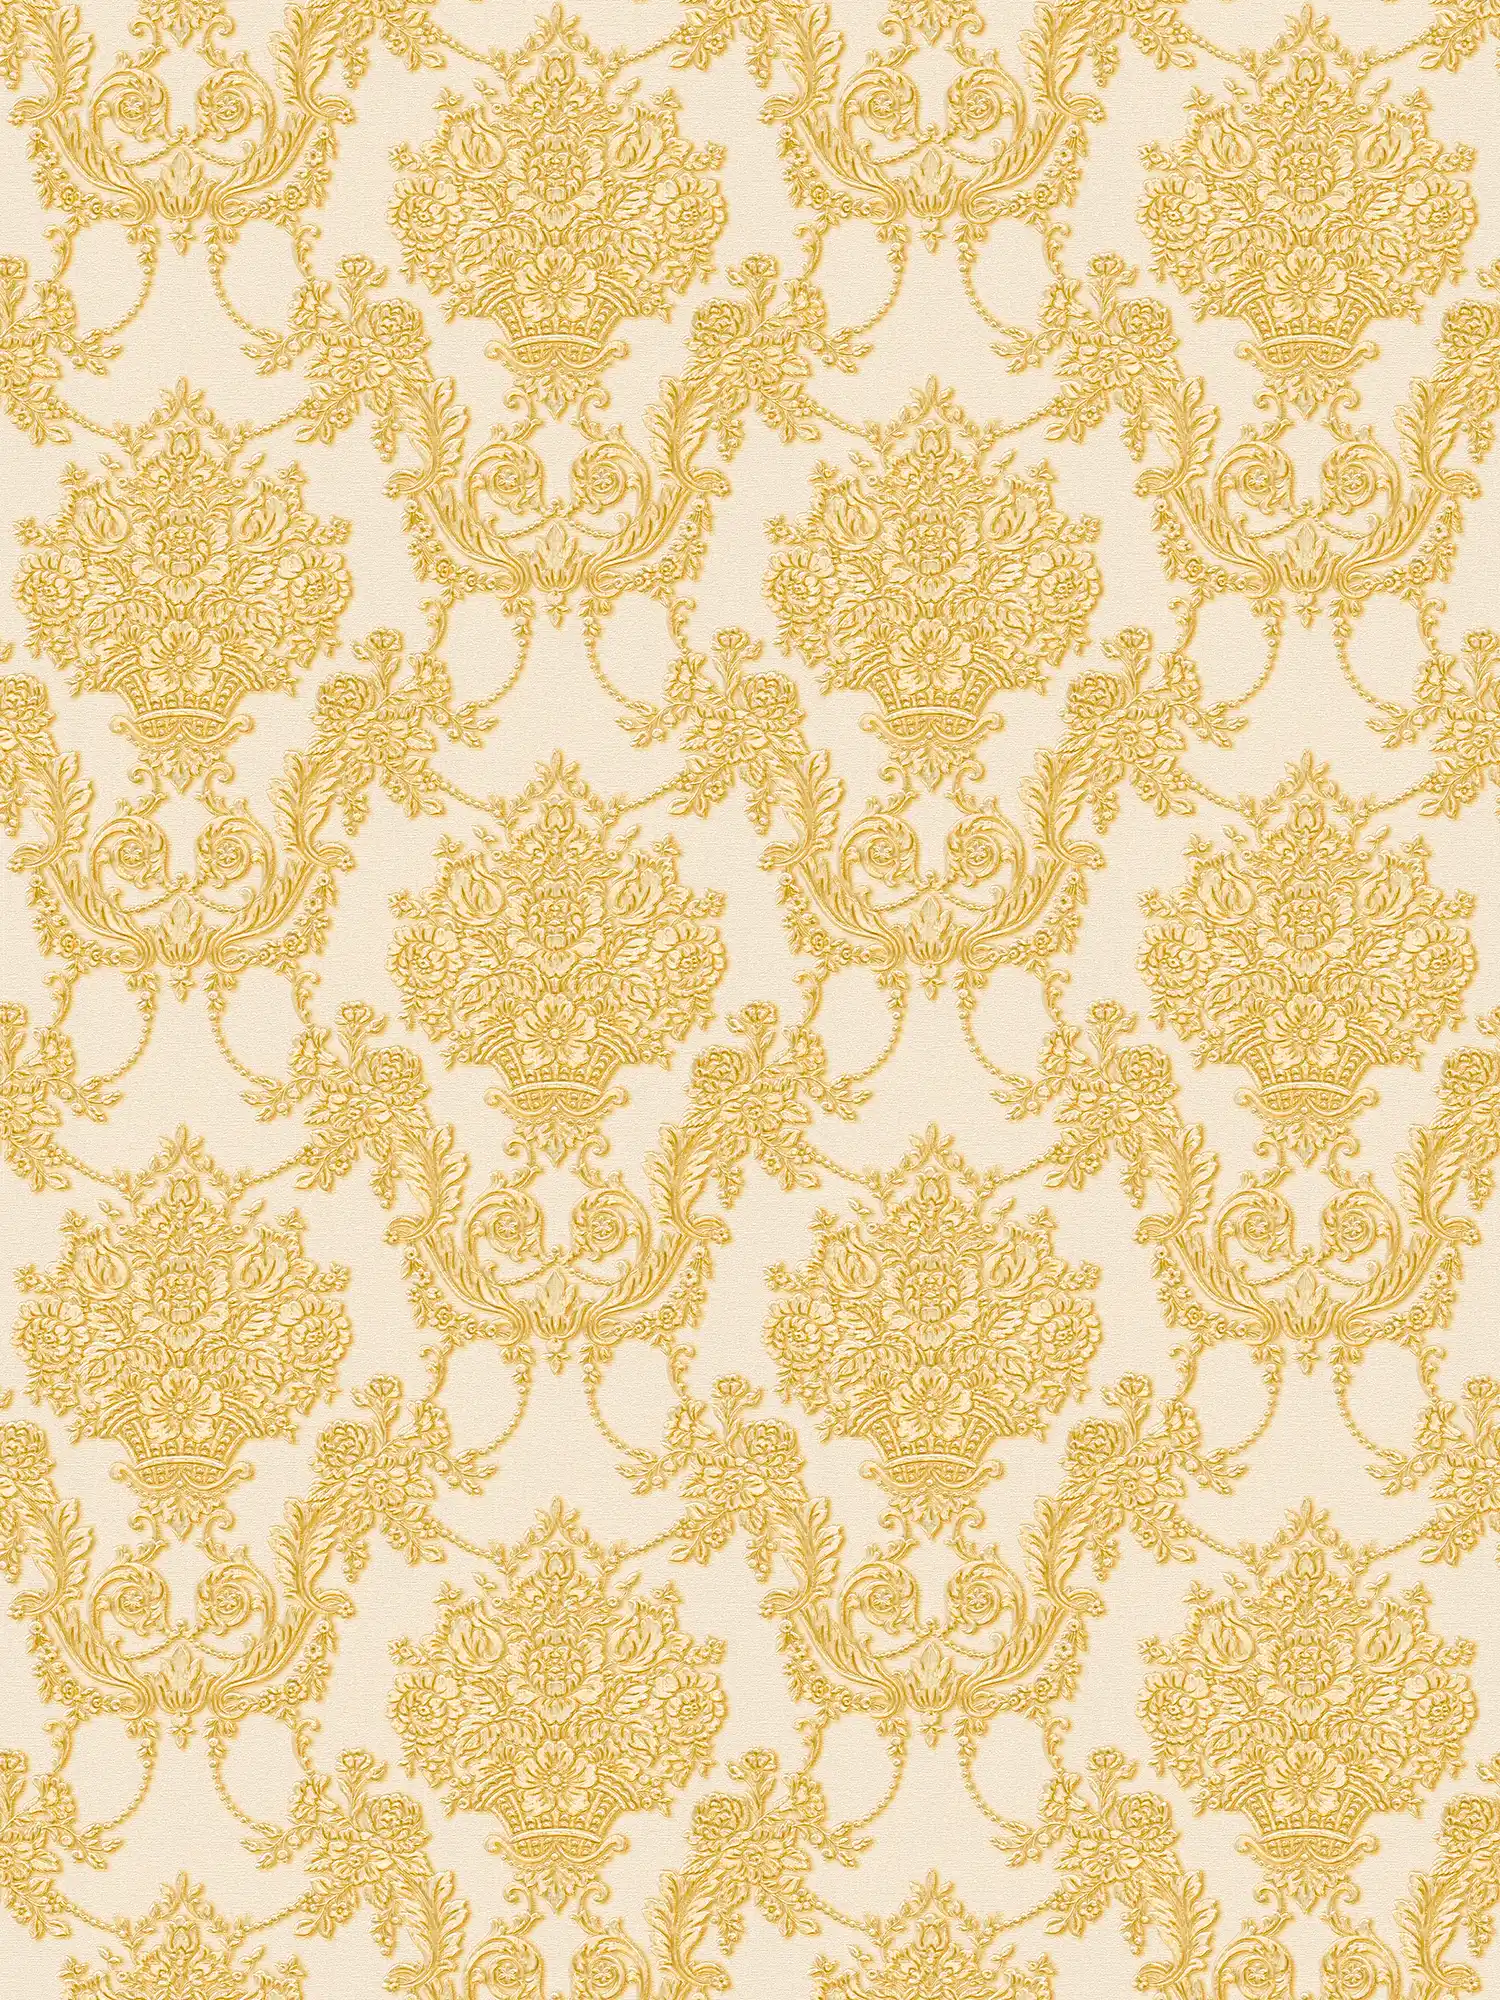 Papier peint baroque doré à motifs floraux - crème, métallique
